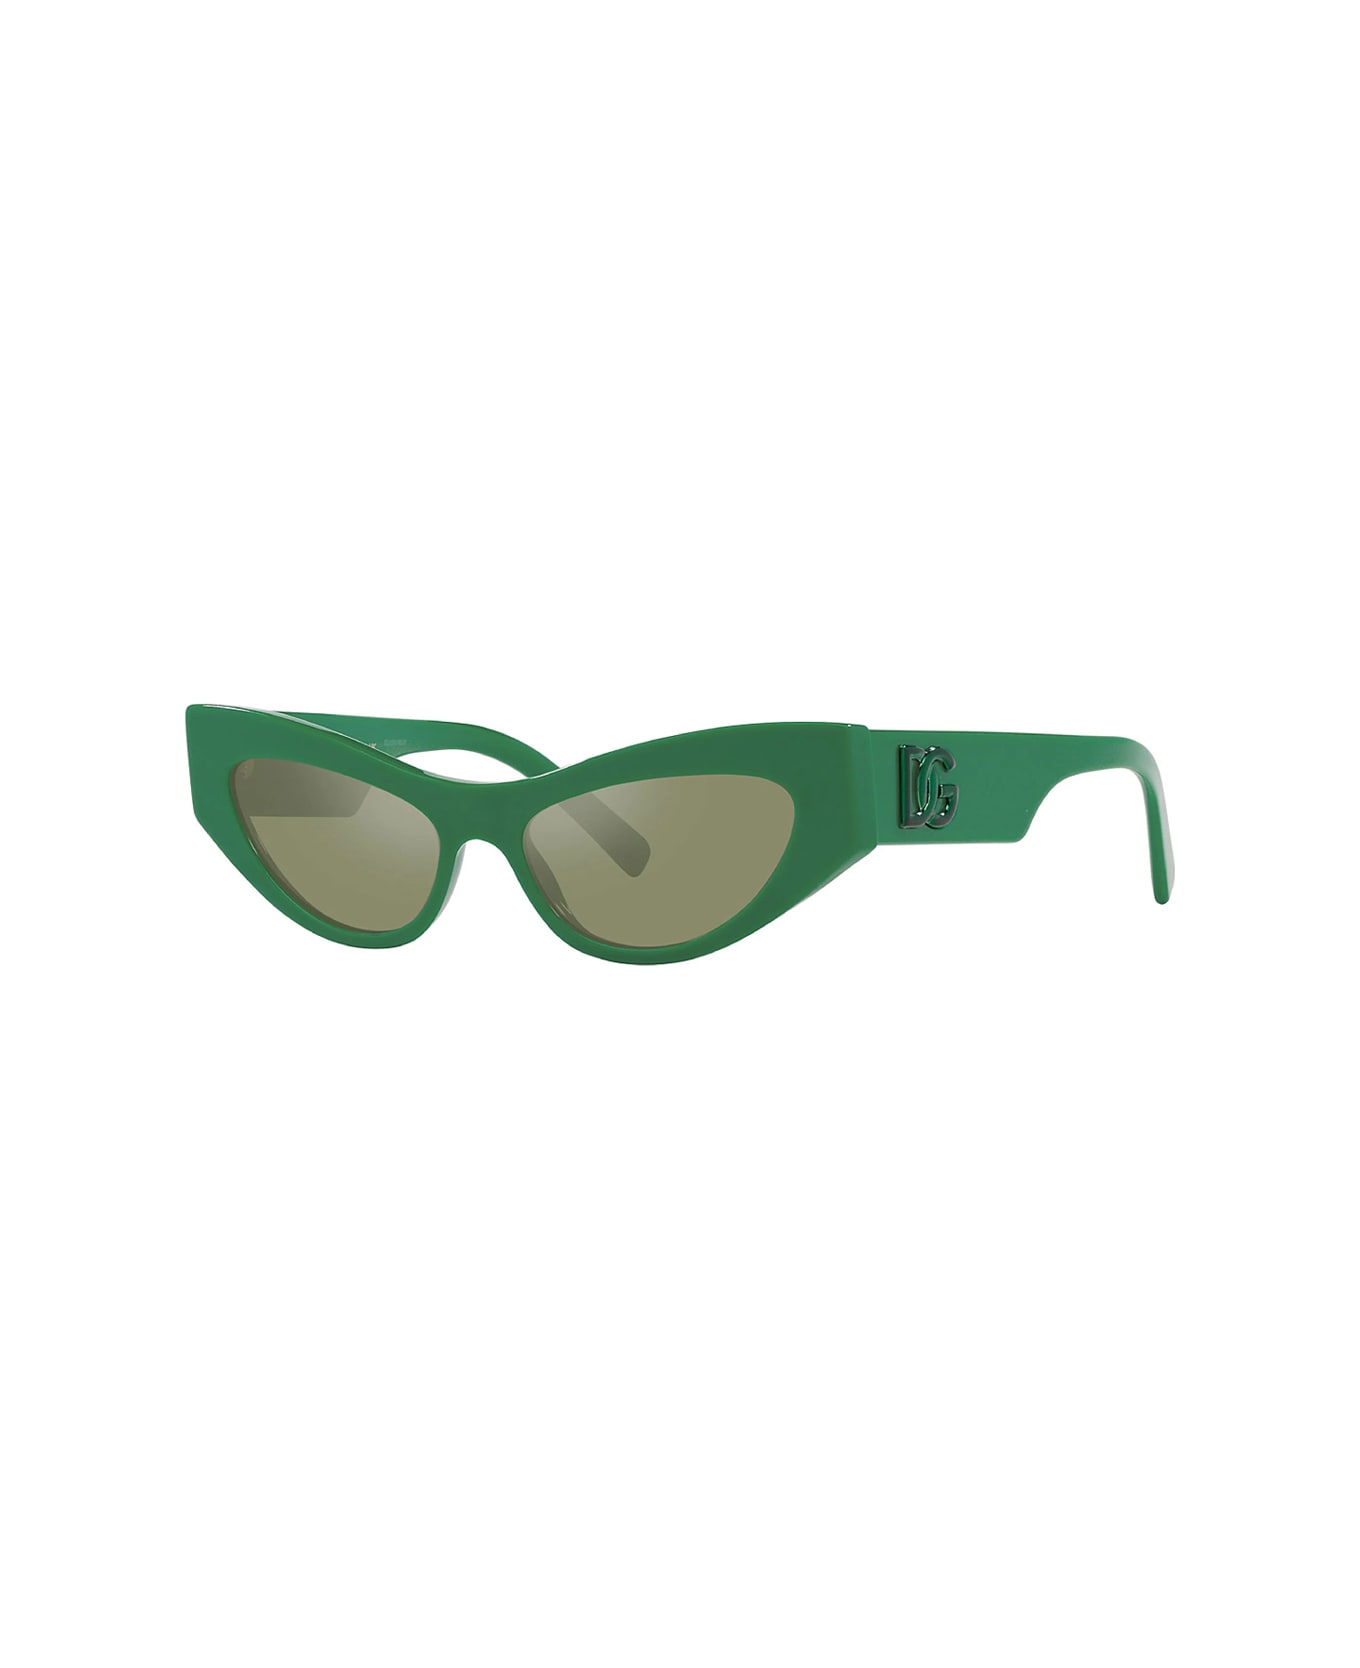 Dolce & Gabbana Eyewear Dg4450 331152 Sunglasses - Verde